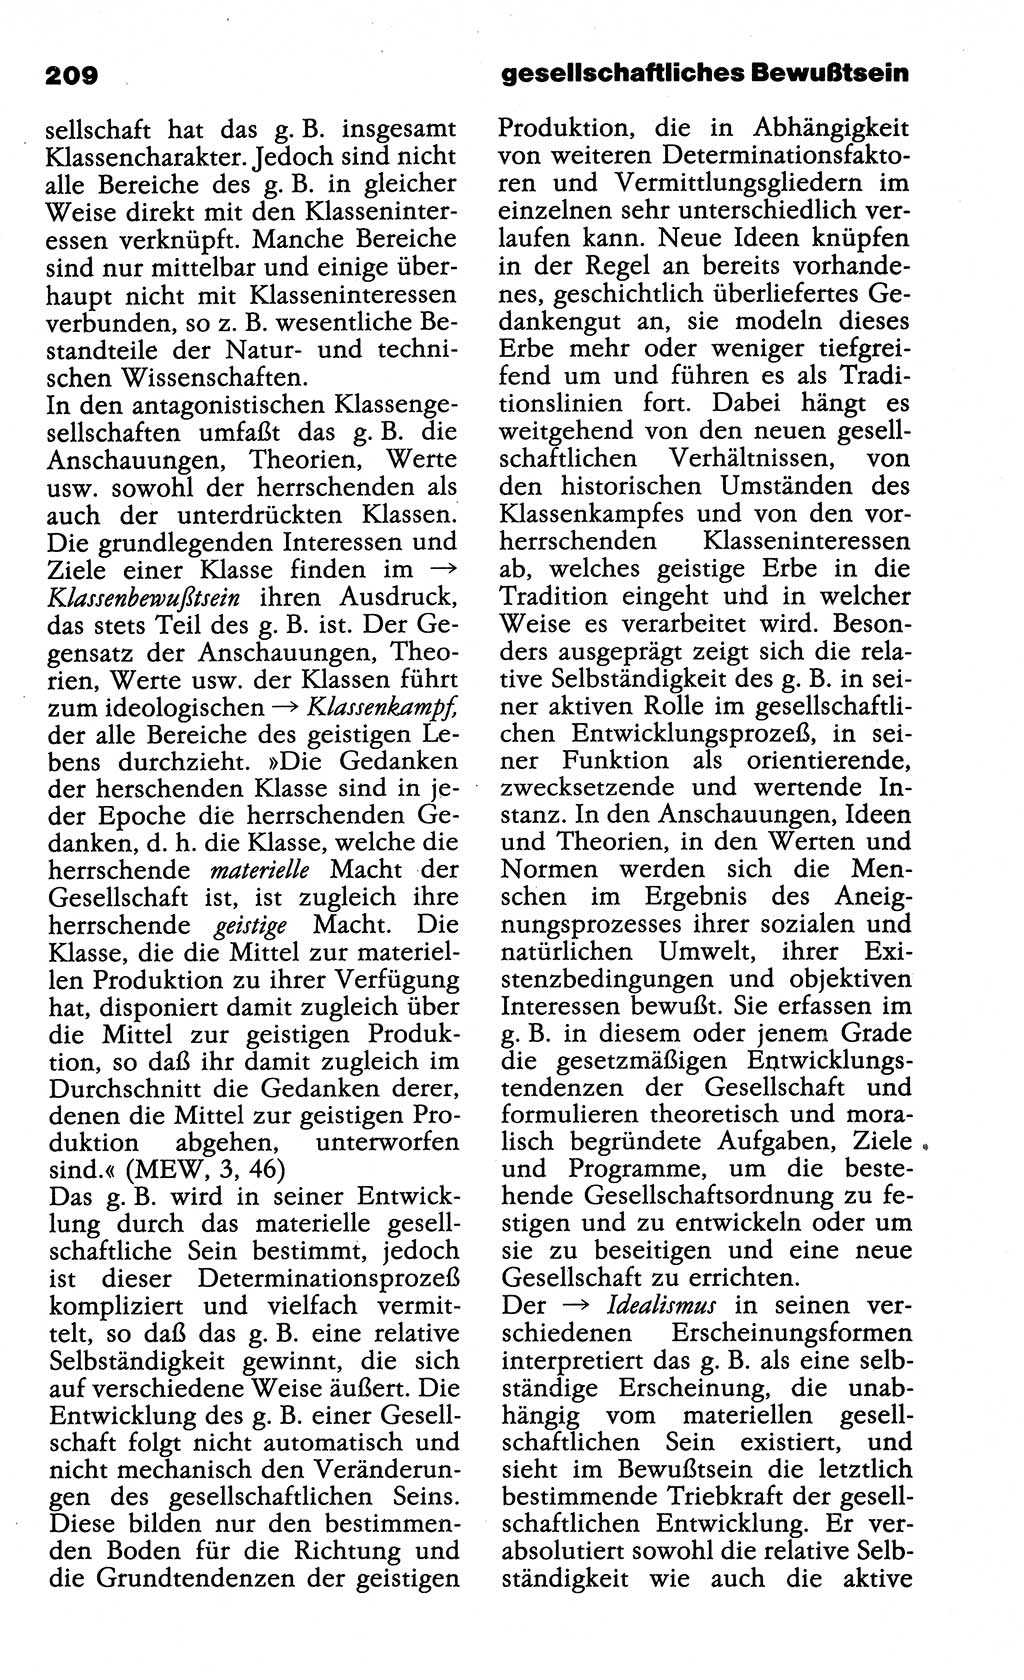 Wörterbuch der marxistisch-leninistischen Philosophie [Deutsche Demokratische Republik (DDR)] 1985, Seite 209 (Wb. ML Phil. DDR 1985, S. 209)